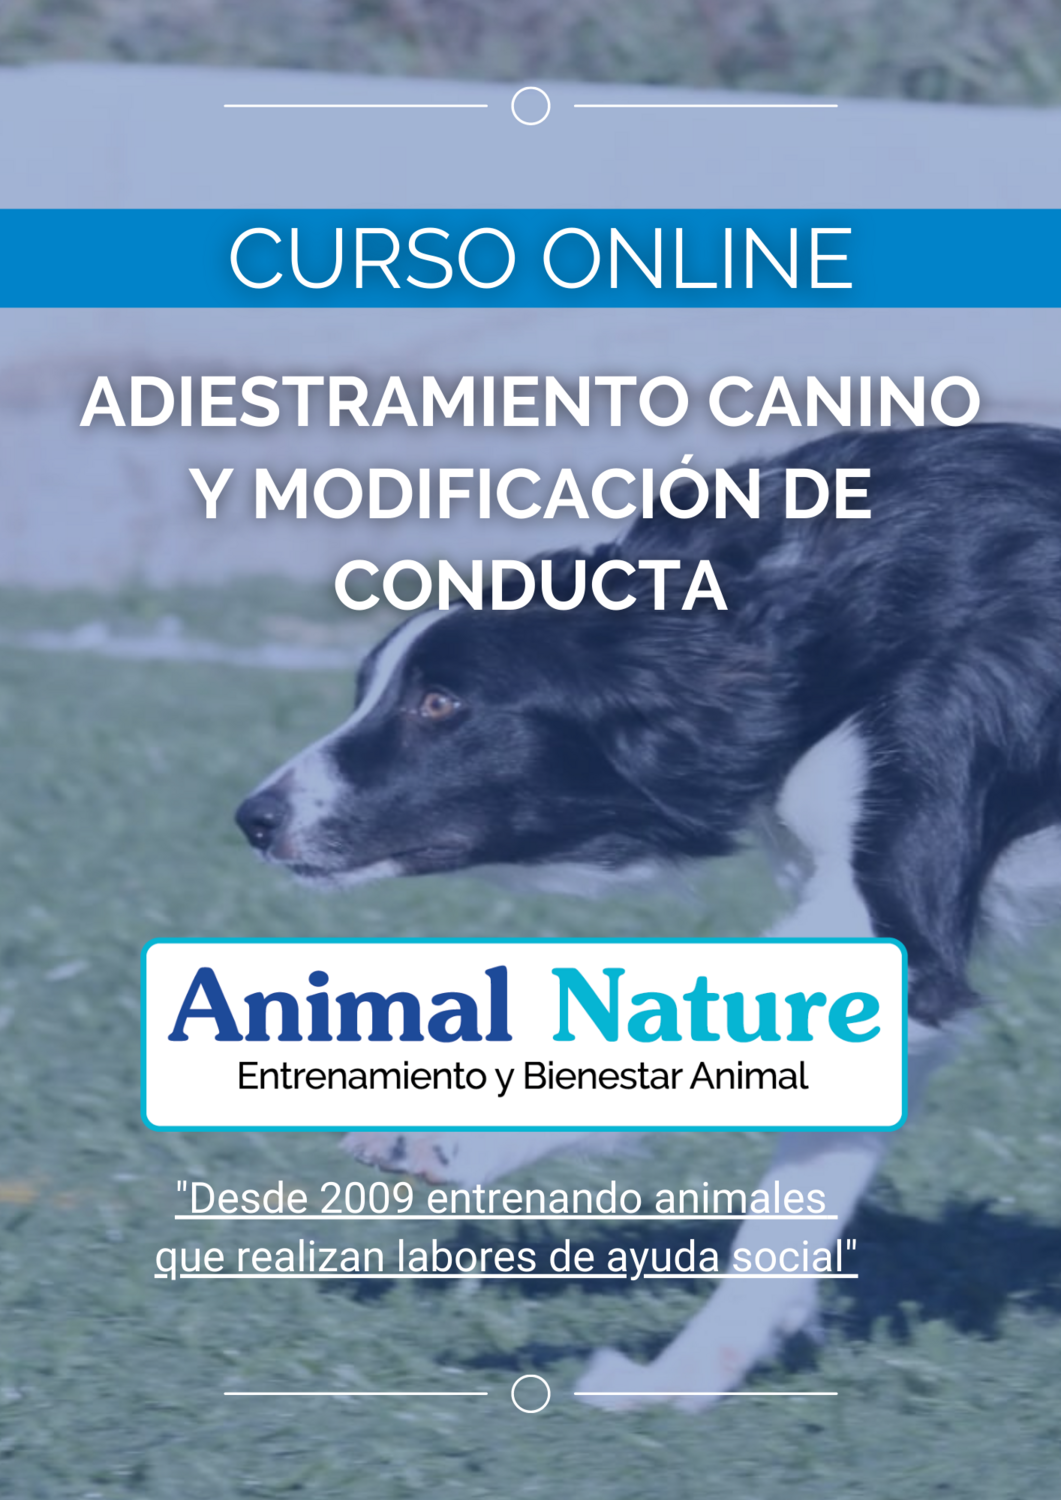 Curso de adiestramiento canino y modificación de conducta